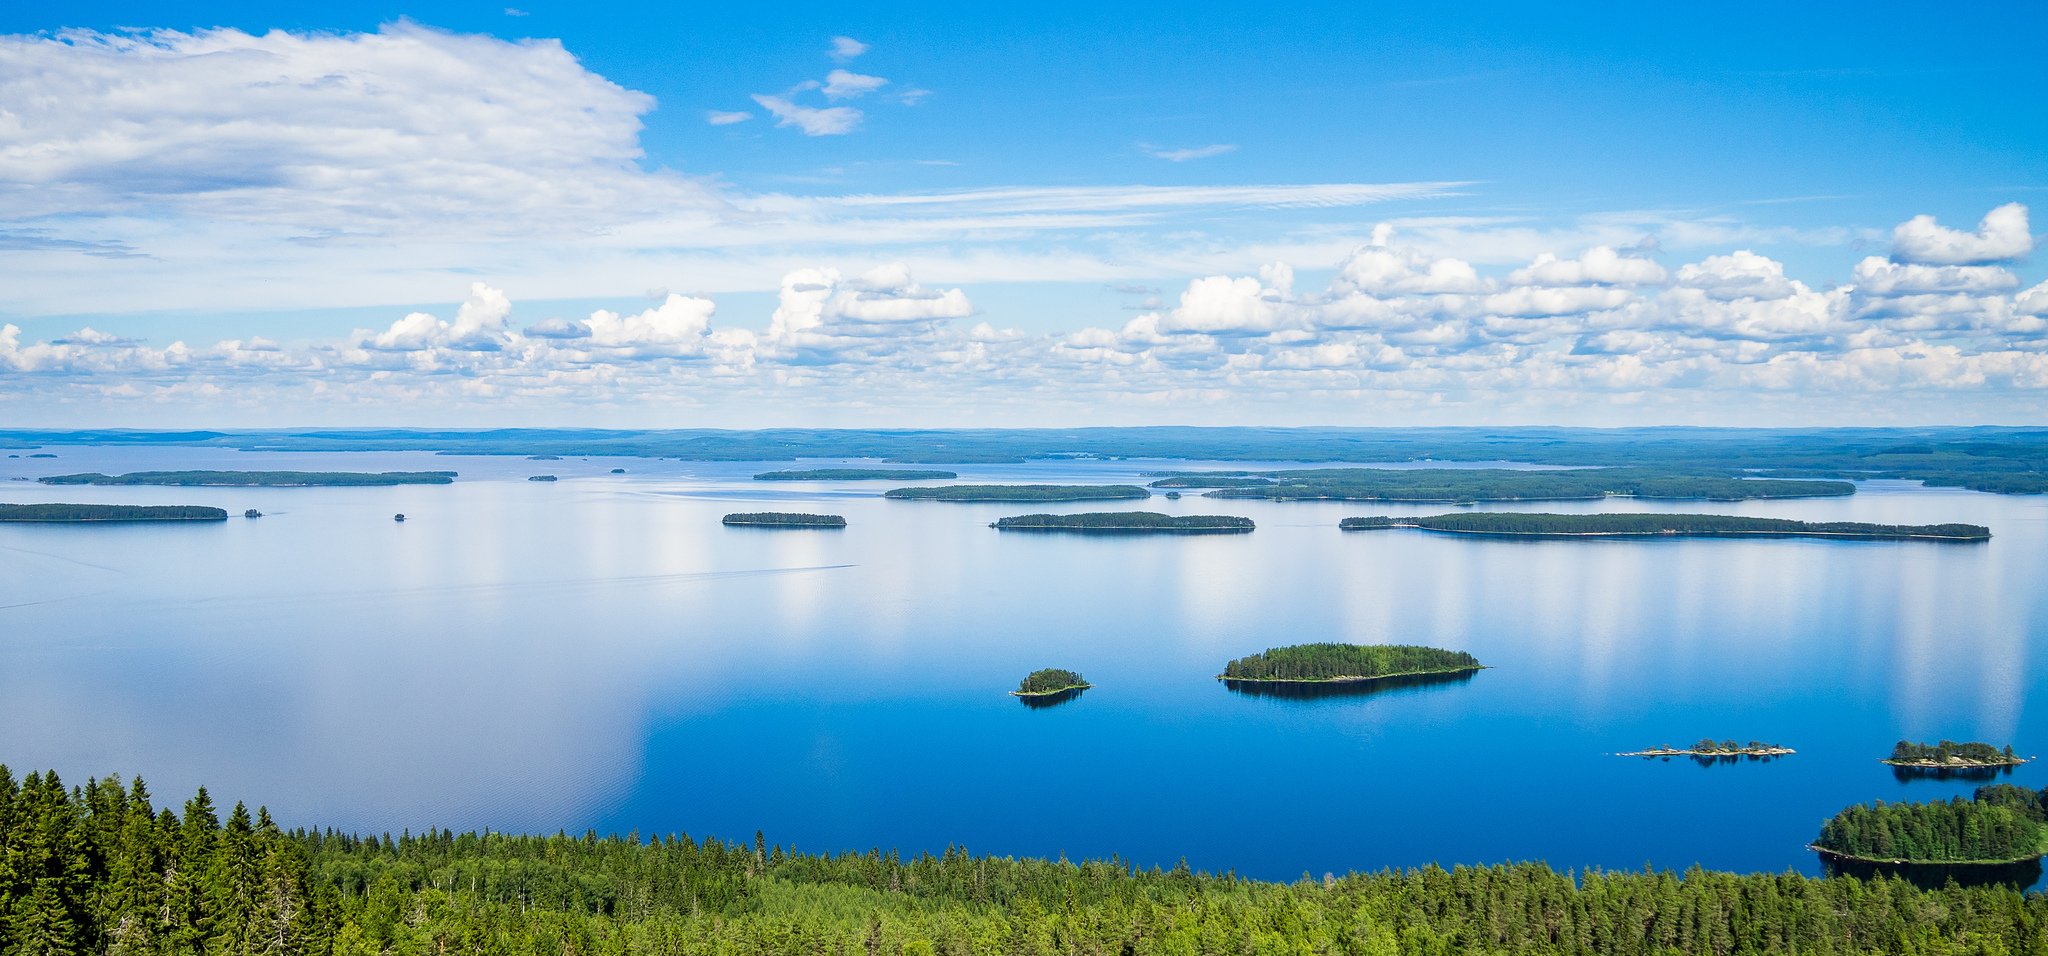 Какую страну называют страной 1000 озер. Озеро Пиелинен Финляндия. Озеро Сайма Финляндия. Озеро Суоми Финляндия. Озеро Штерн Финляндия.